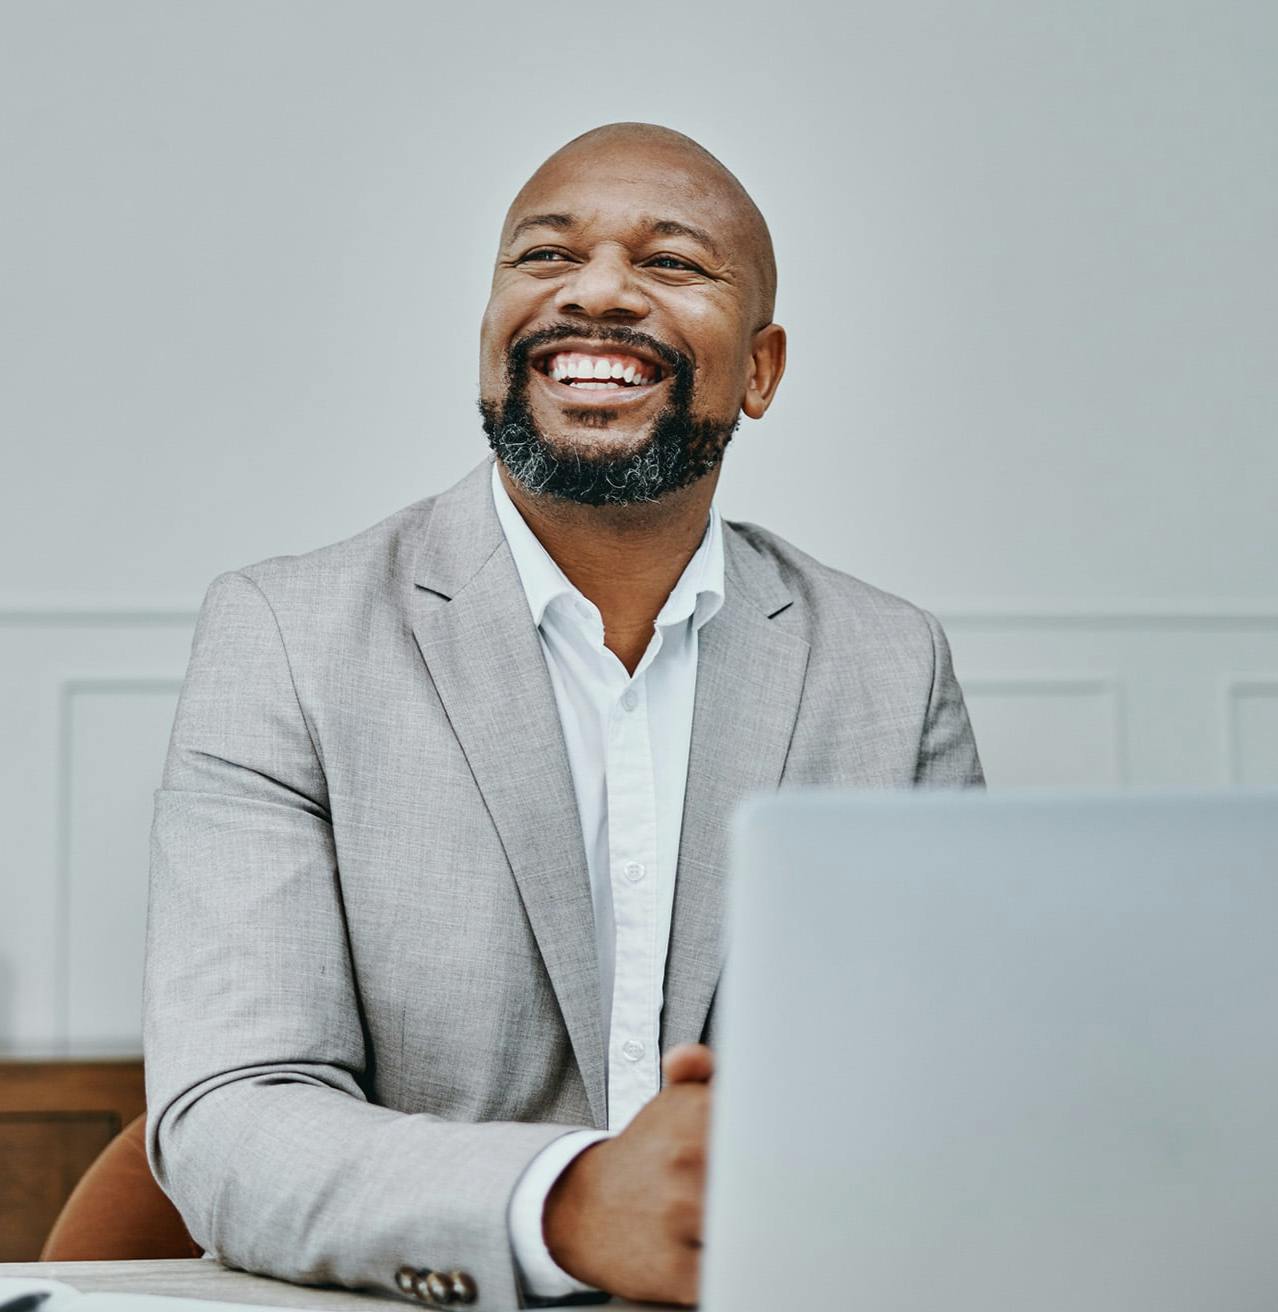 Man wearing a grey suit smiling